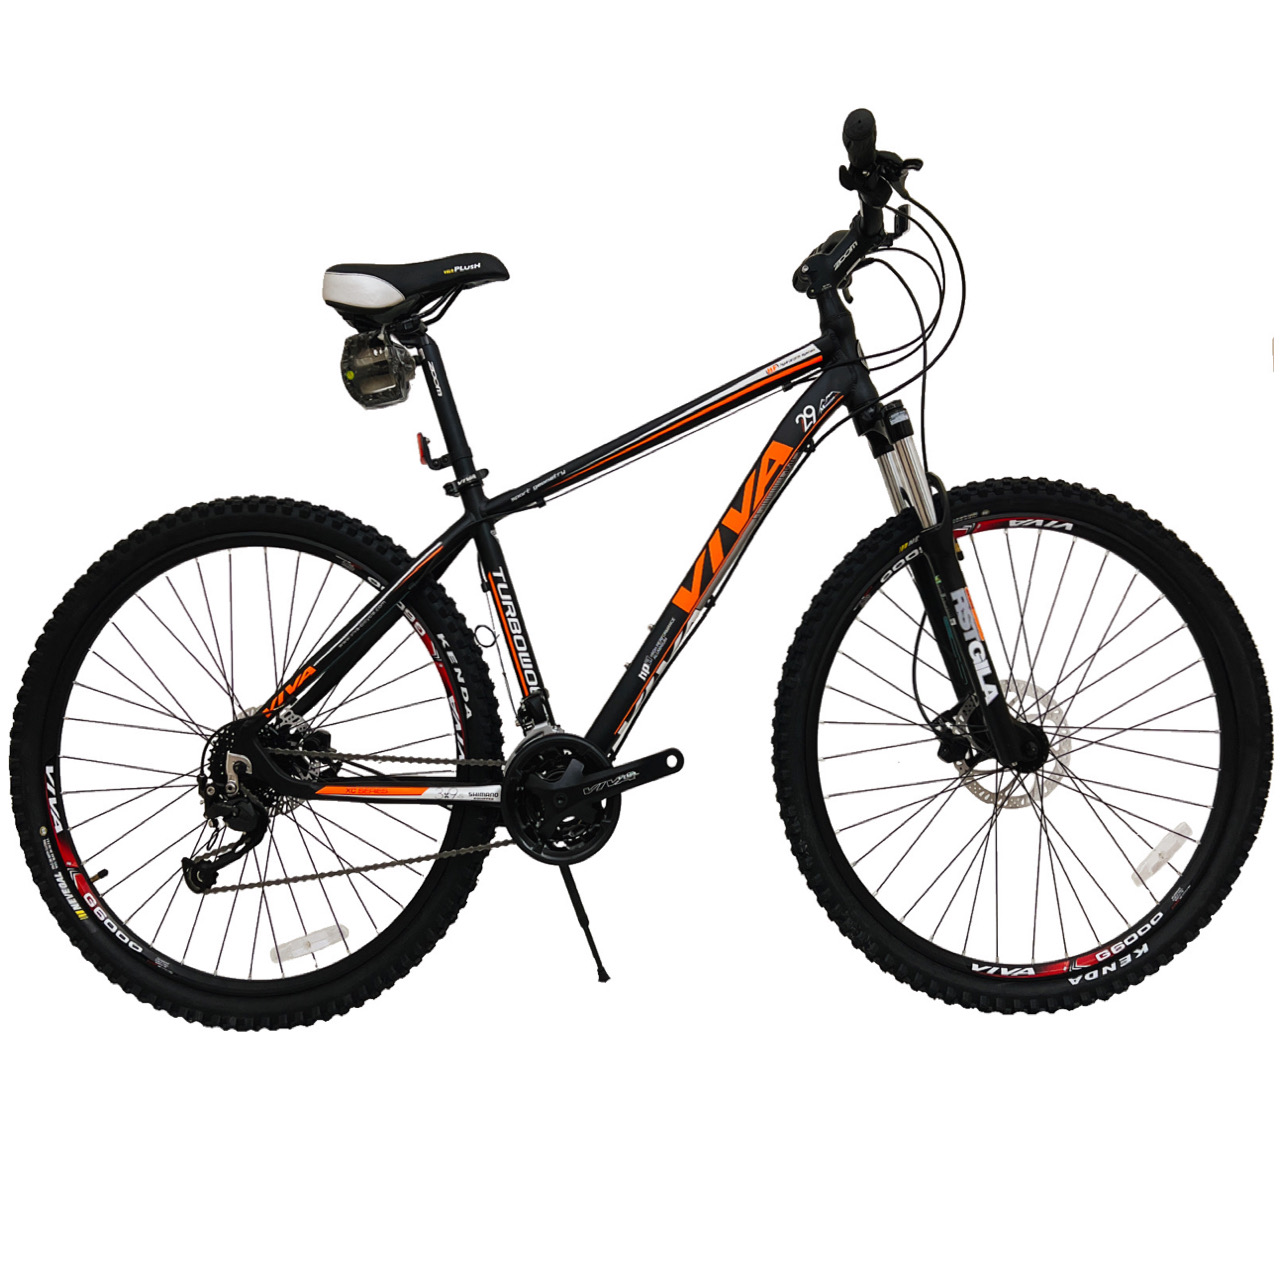 نکته خرید - قیمت روز دوچرخه کوهستان ویوا مدل TURBO WOLF کد هیدرولیک سایز 29 خرید